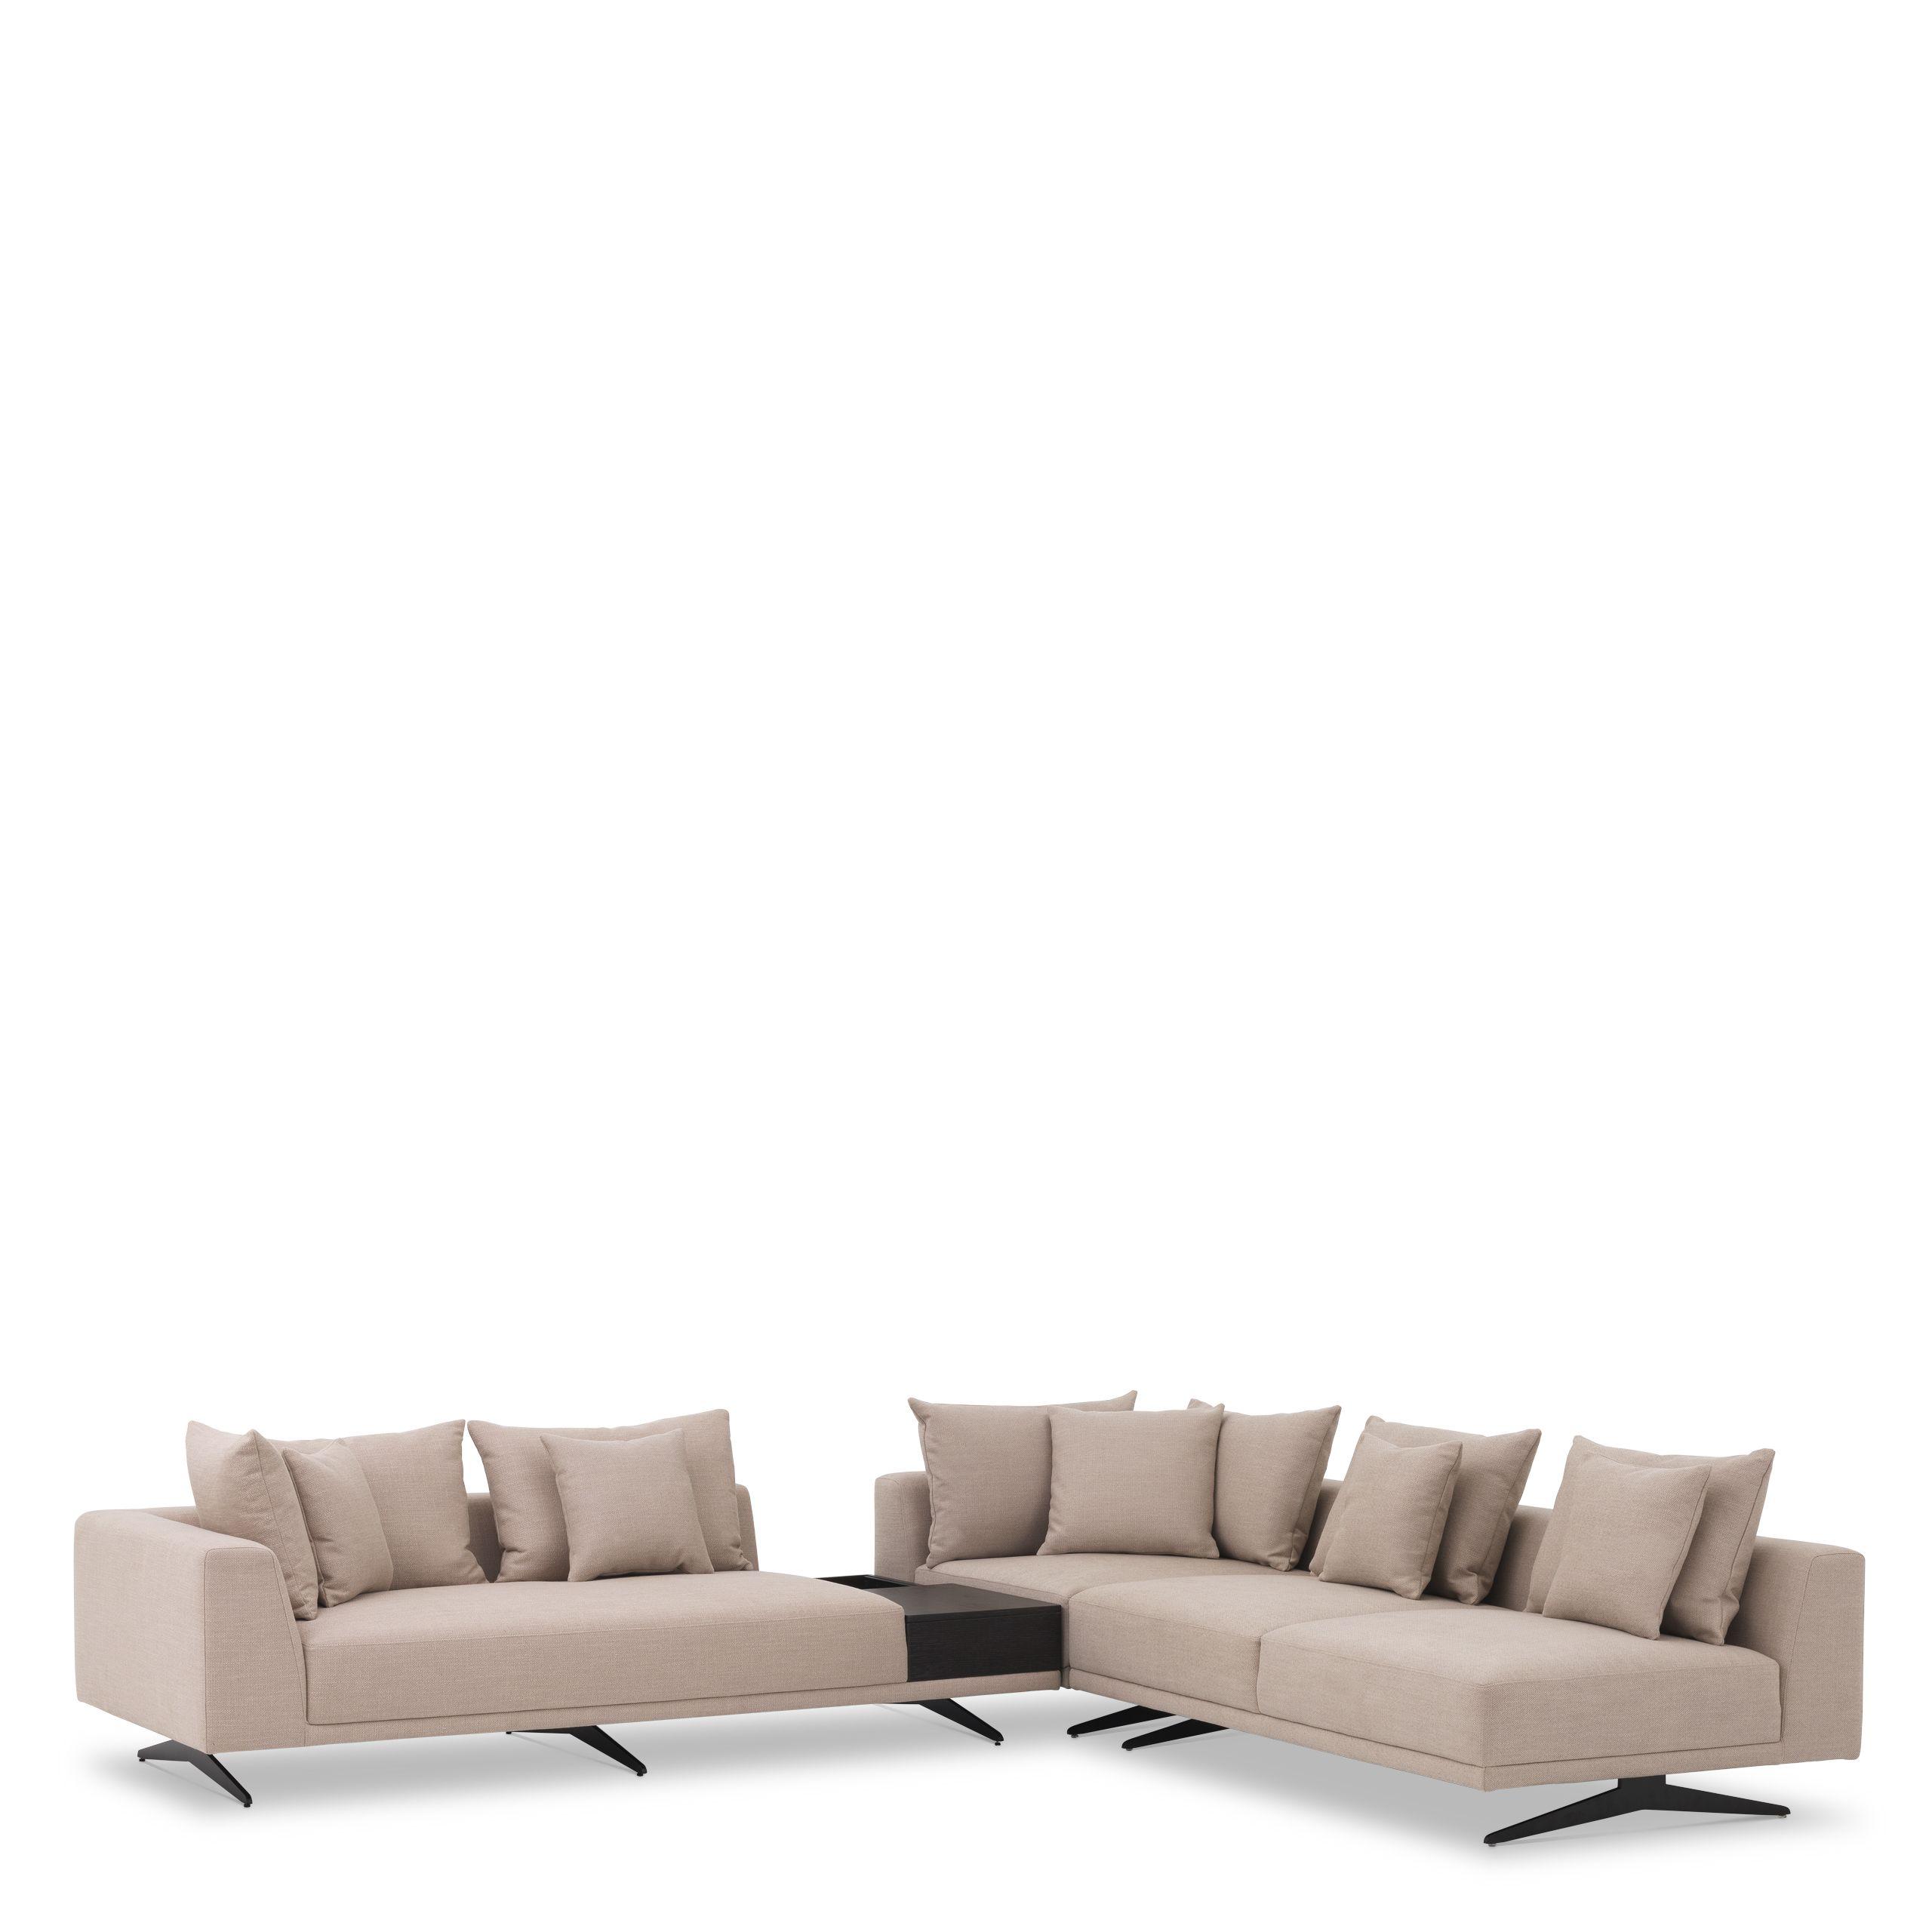 Купить Угловой диван Sofa Endless в интернет-магазине roooms.ru